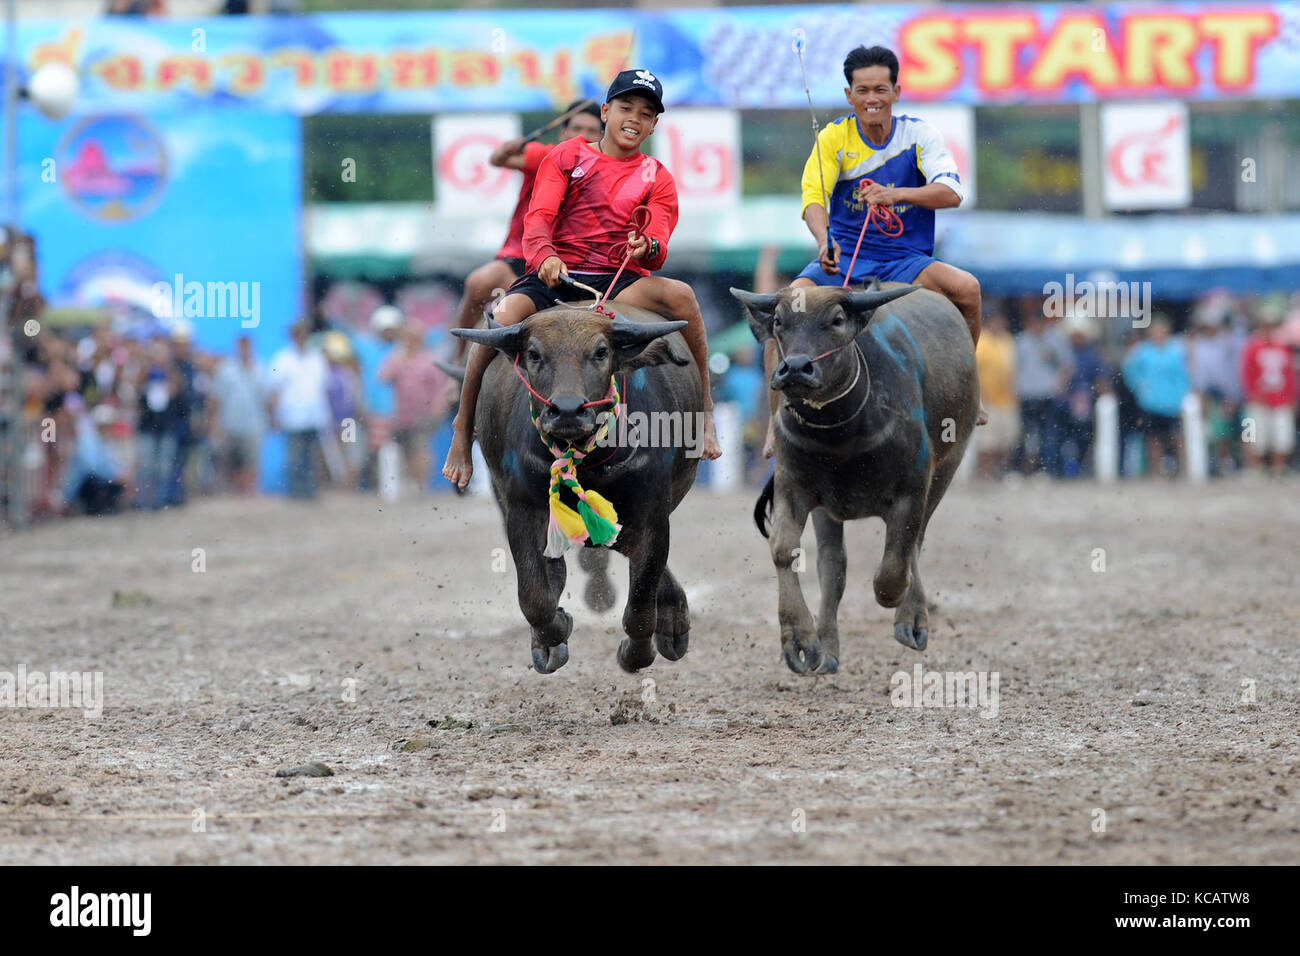 Chonburi, Thailand. 4. Oktober 2017. Racers während einer jährlichen Buffalo racing in Chonburi, Thailand konkurrieren. Credit: Rachen sageamsak/Xinhua/alamy leben Nachrichten Stockfoto